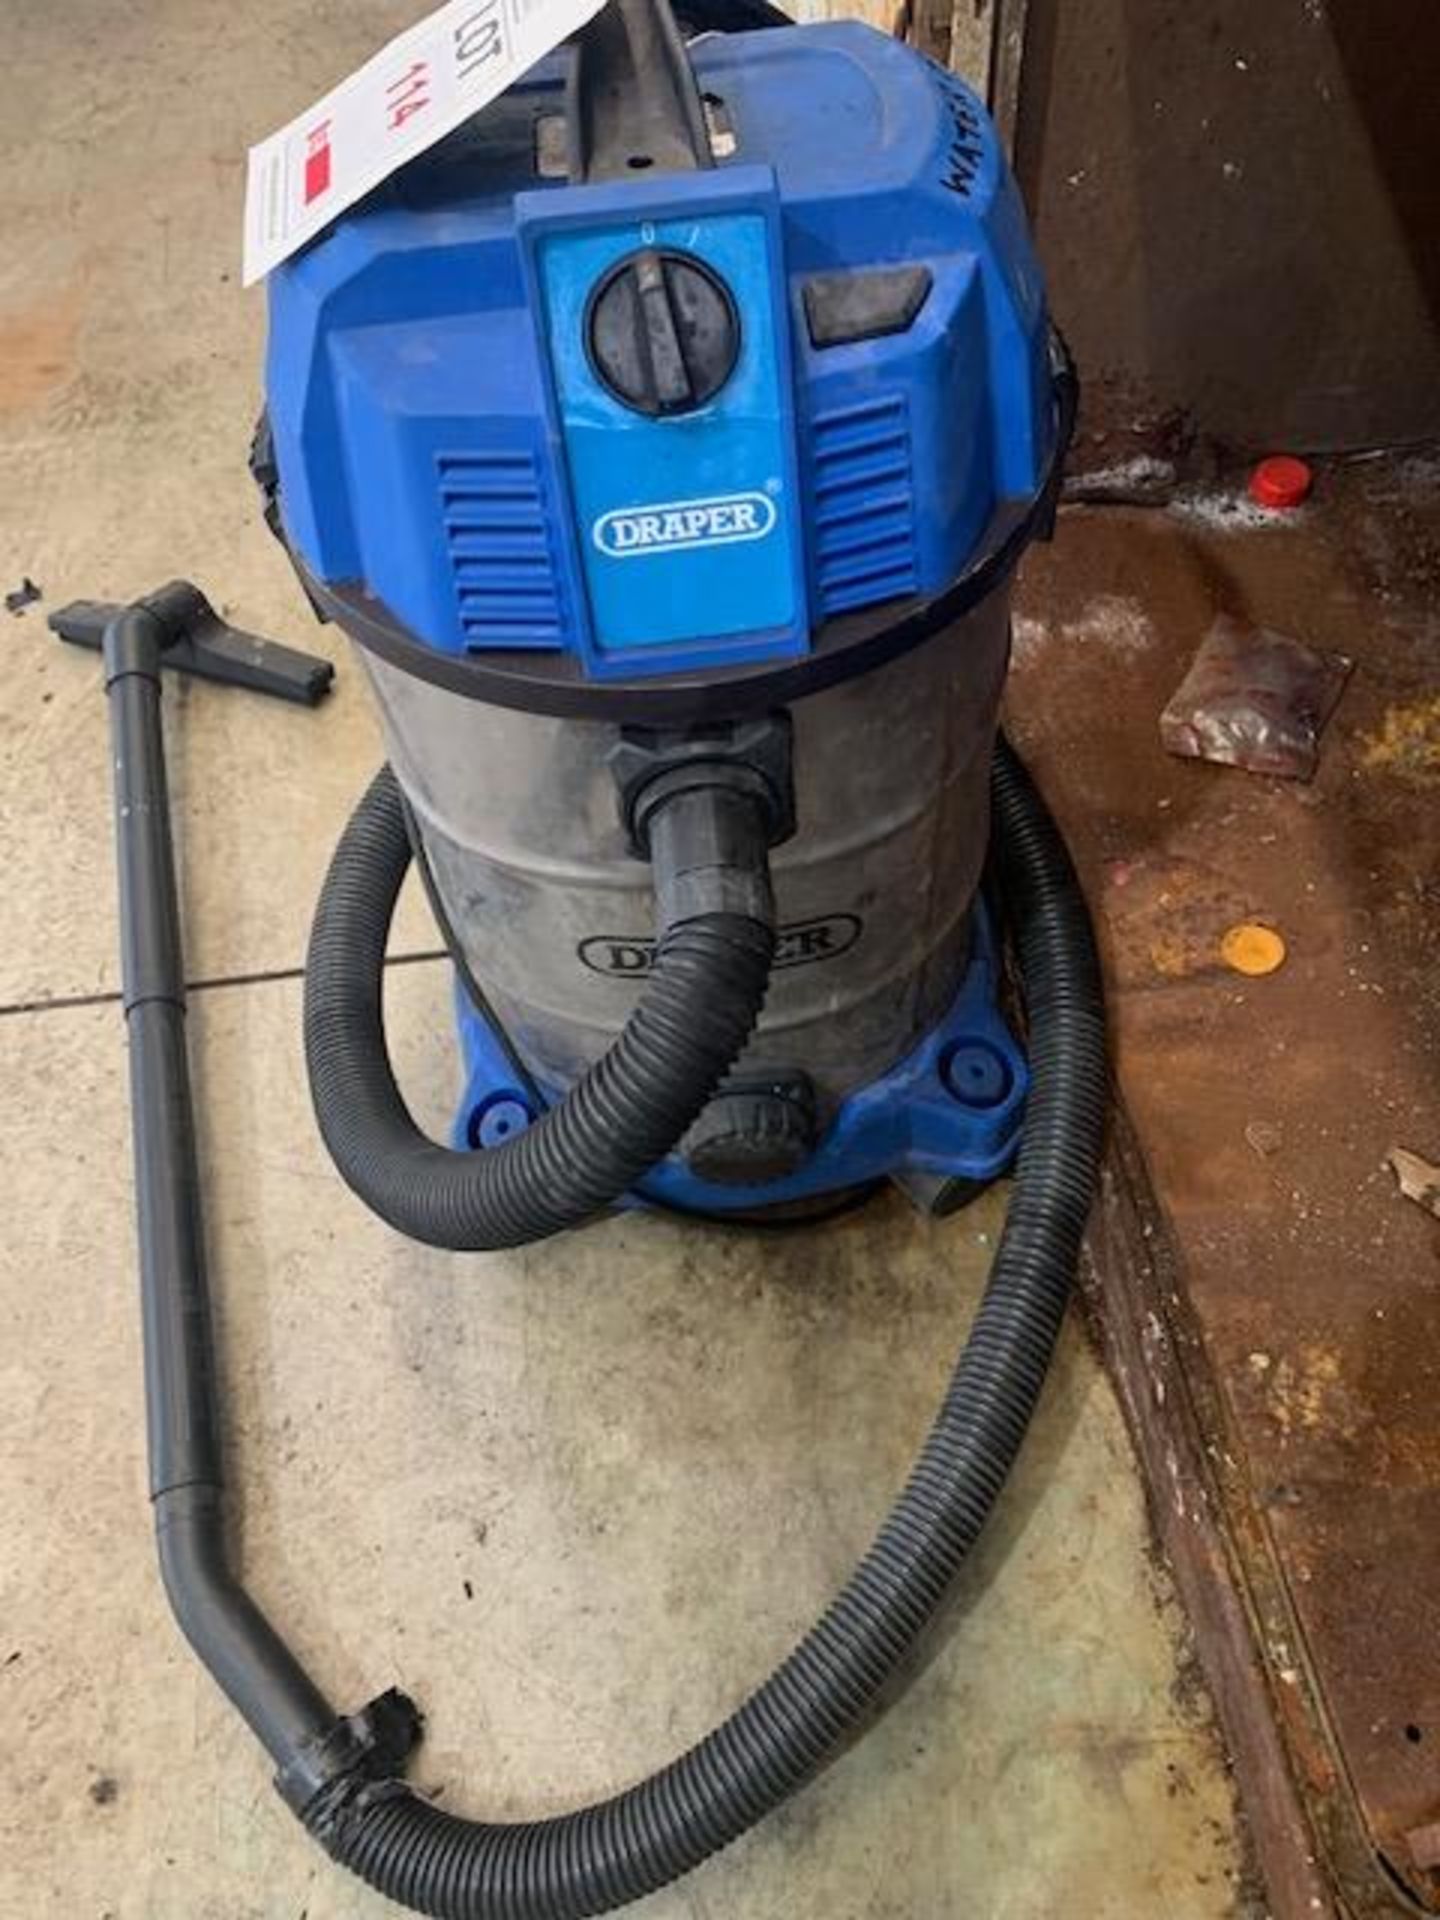 Draper 20523 wet & dry vacuum cleaner - Bild 2 aus 2